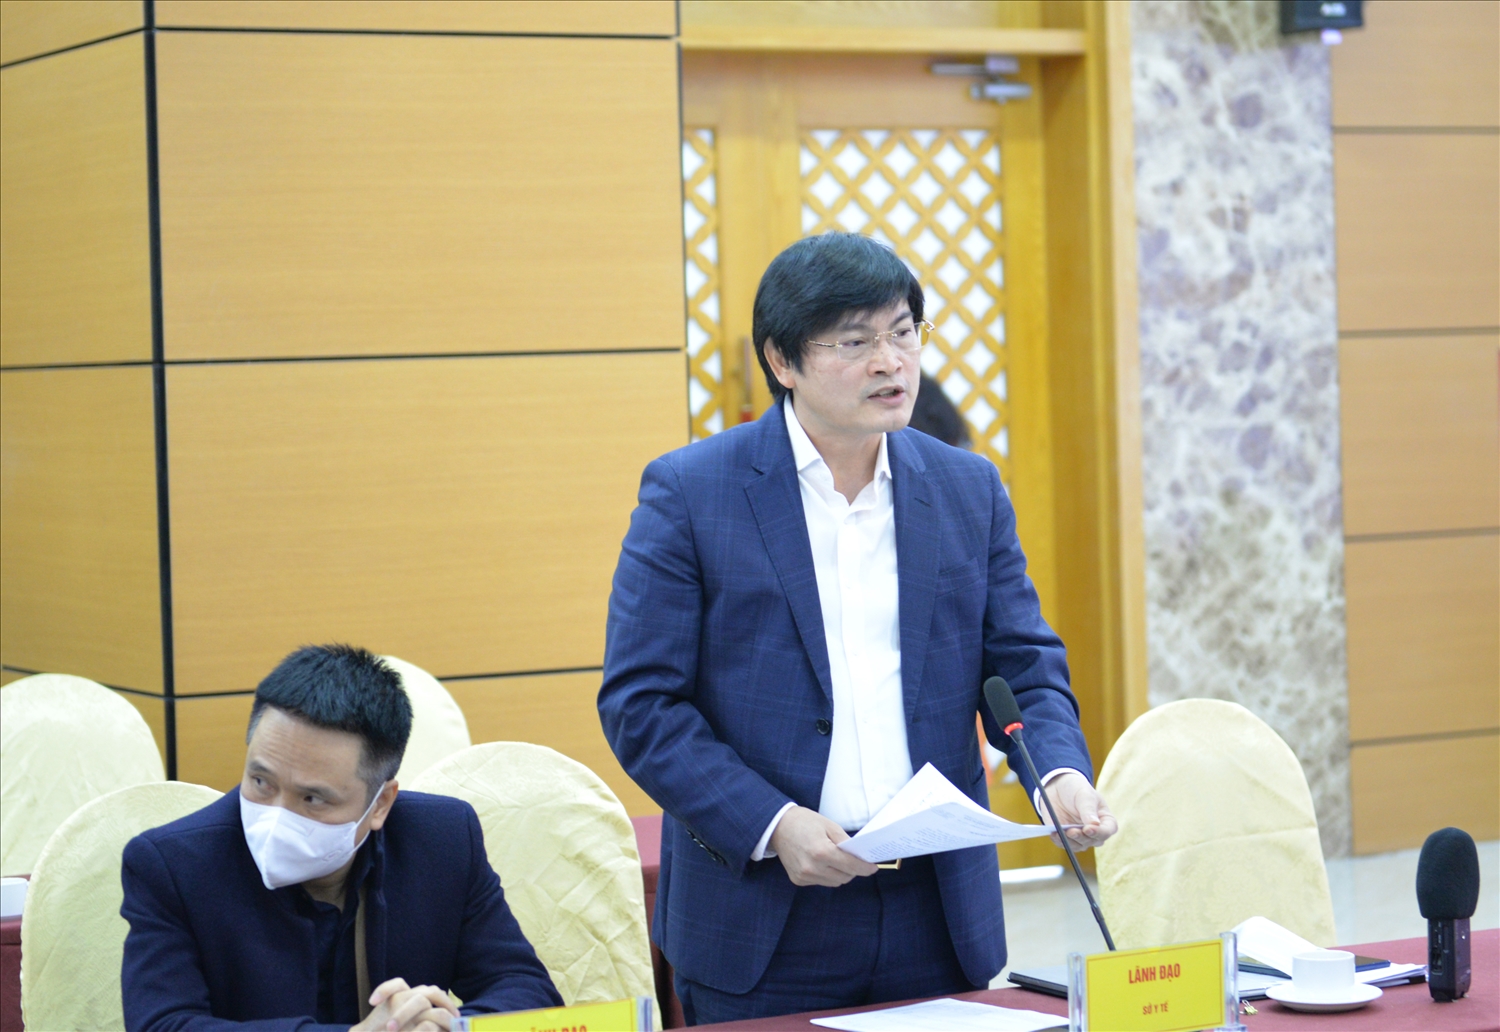 Ông Nguyễn Trọng Diện, Giám đốc Sở Y tế tỉnh Quảng Ninh: Khuyến khích người dân tự xét nghiệm tại nhà để giảm tải áp lực cho đội ngũ y tế